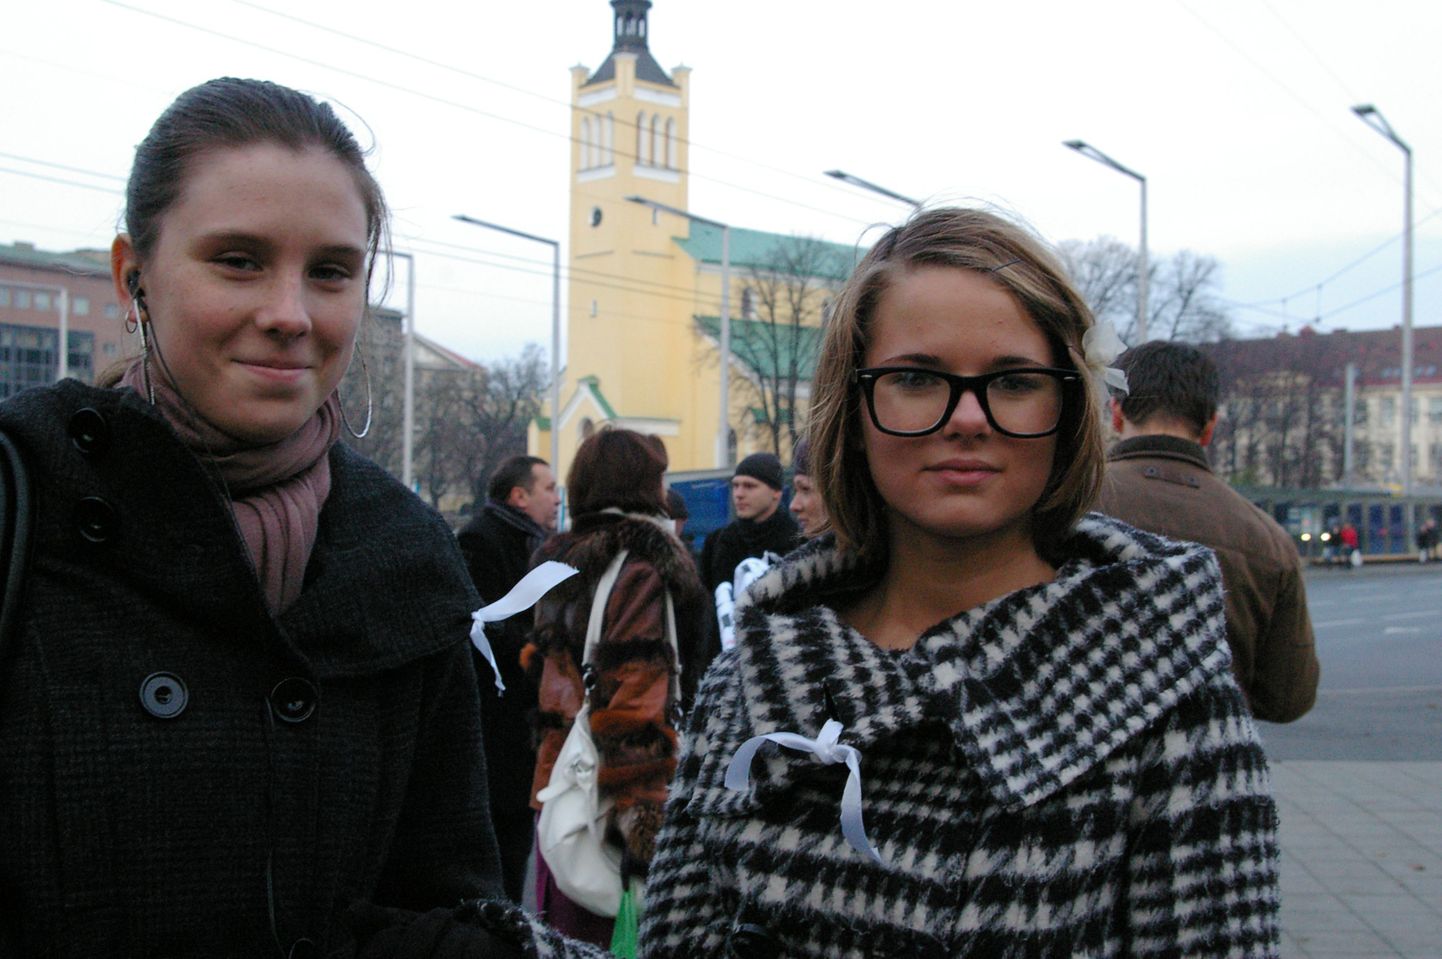 Екатерина (слева), ученица Русского лицея, и Дана (справа), ученица гимназии Ярвеотса, на пикете в защиту образования на русском языке в Эстонии